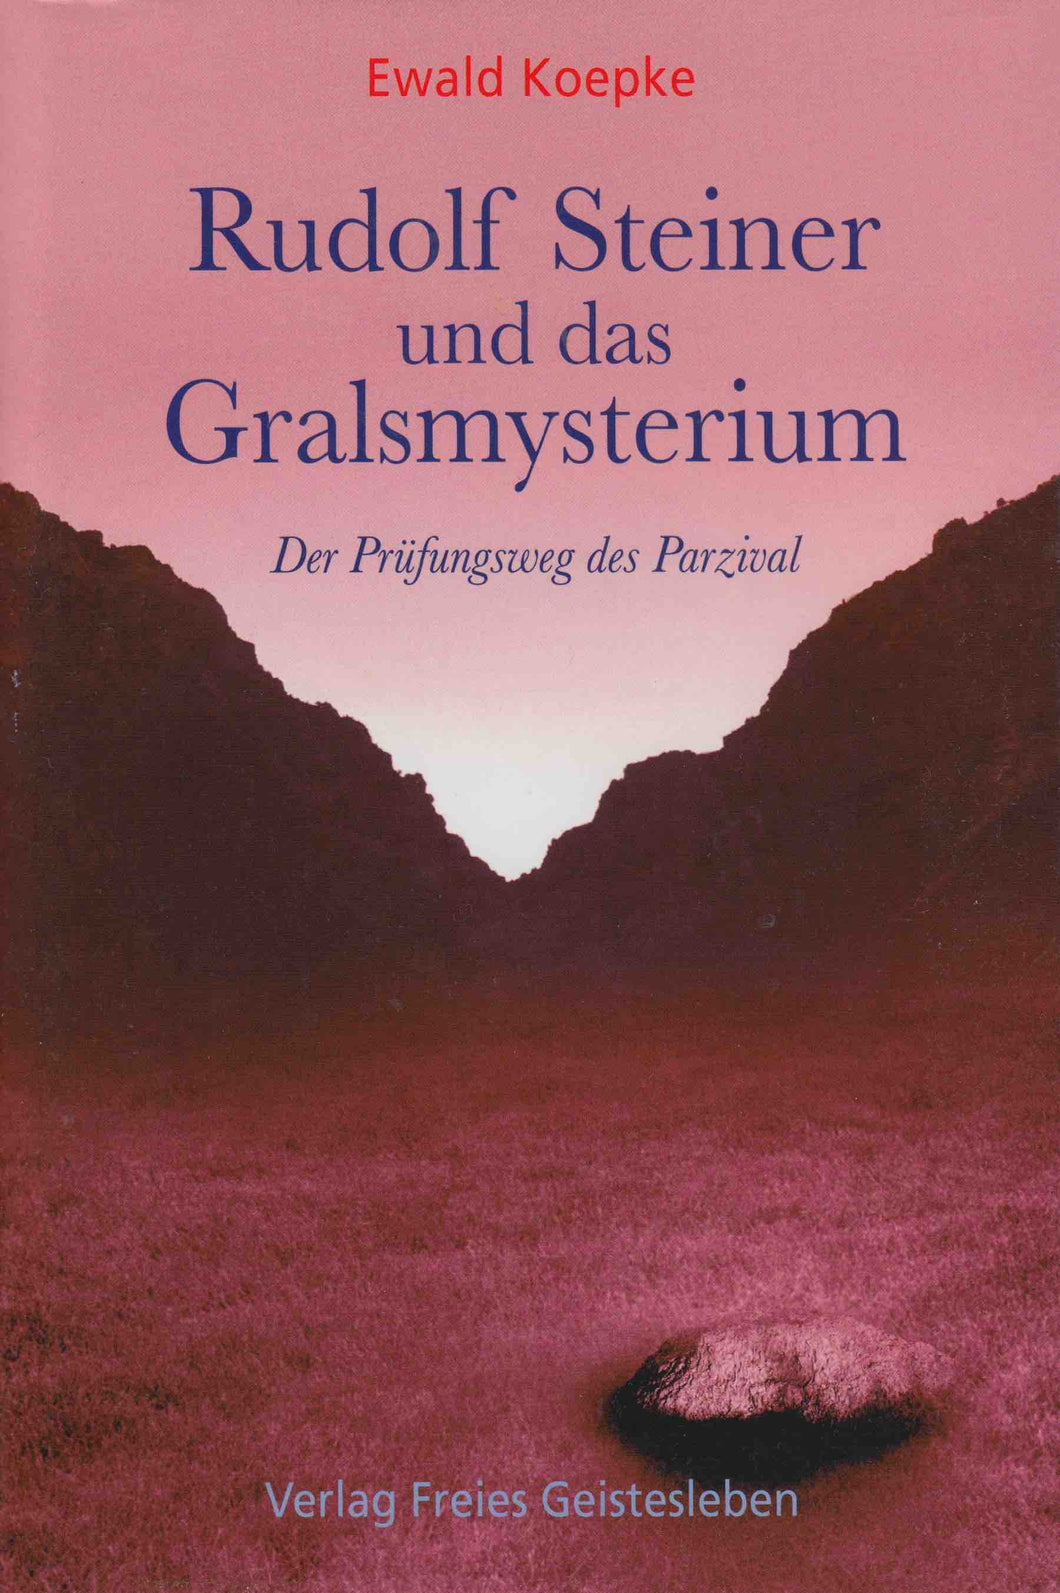 Rudolf Steiner und das Gralsmysterium